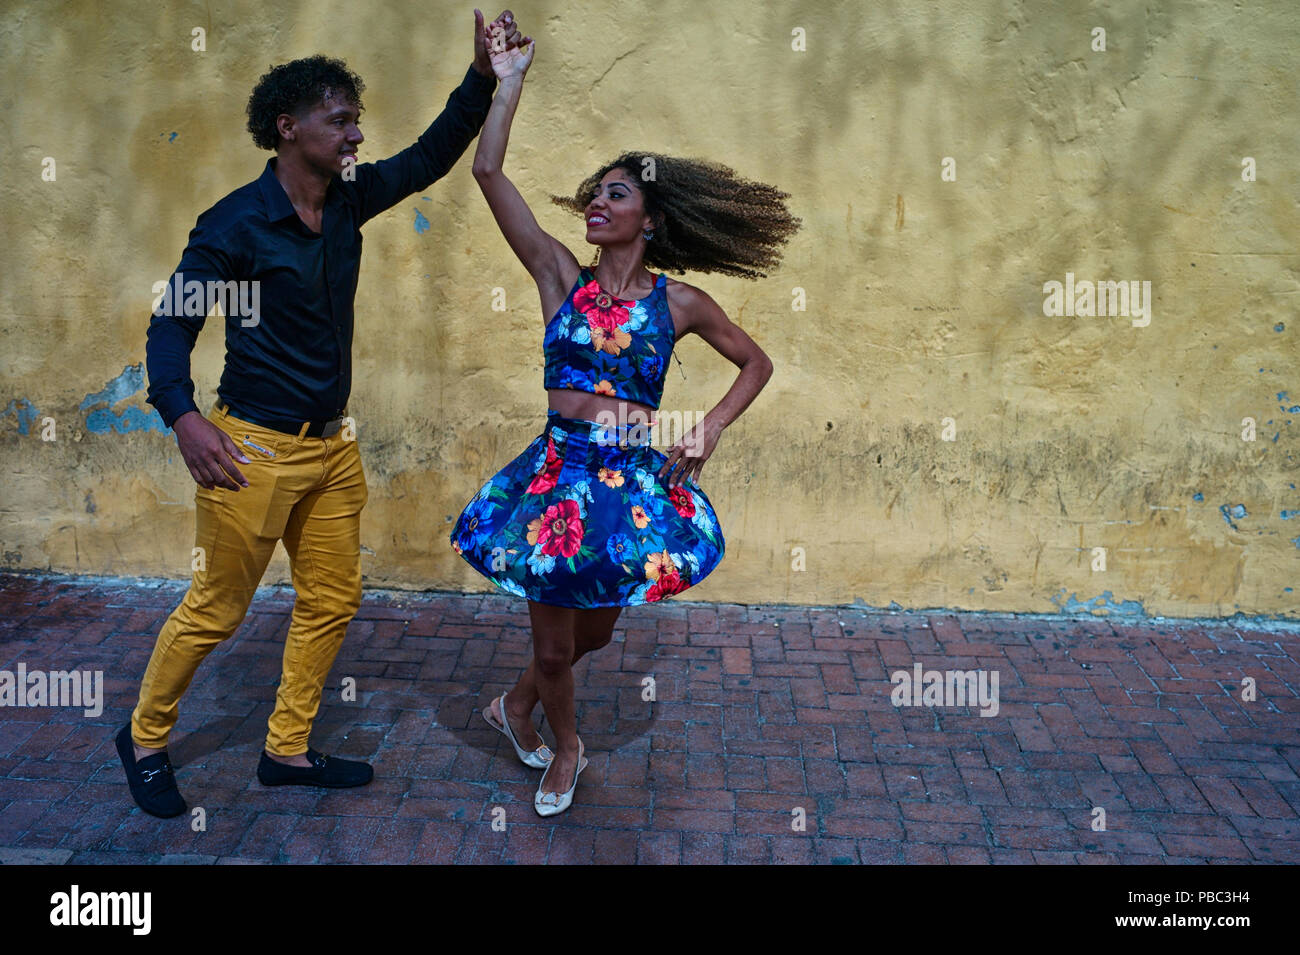 Two Colombian salsa dance instructors improvise a fun salsa dance at the Plaza del Reloj Stock Photo